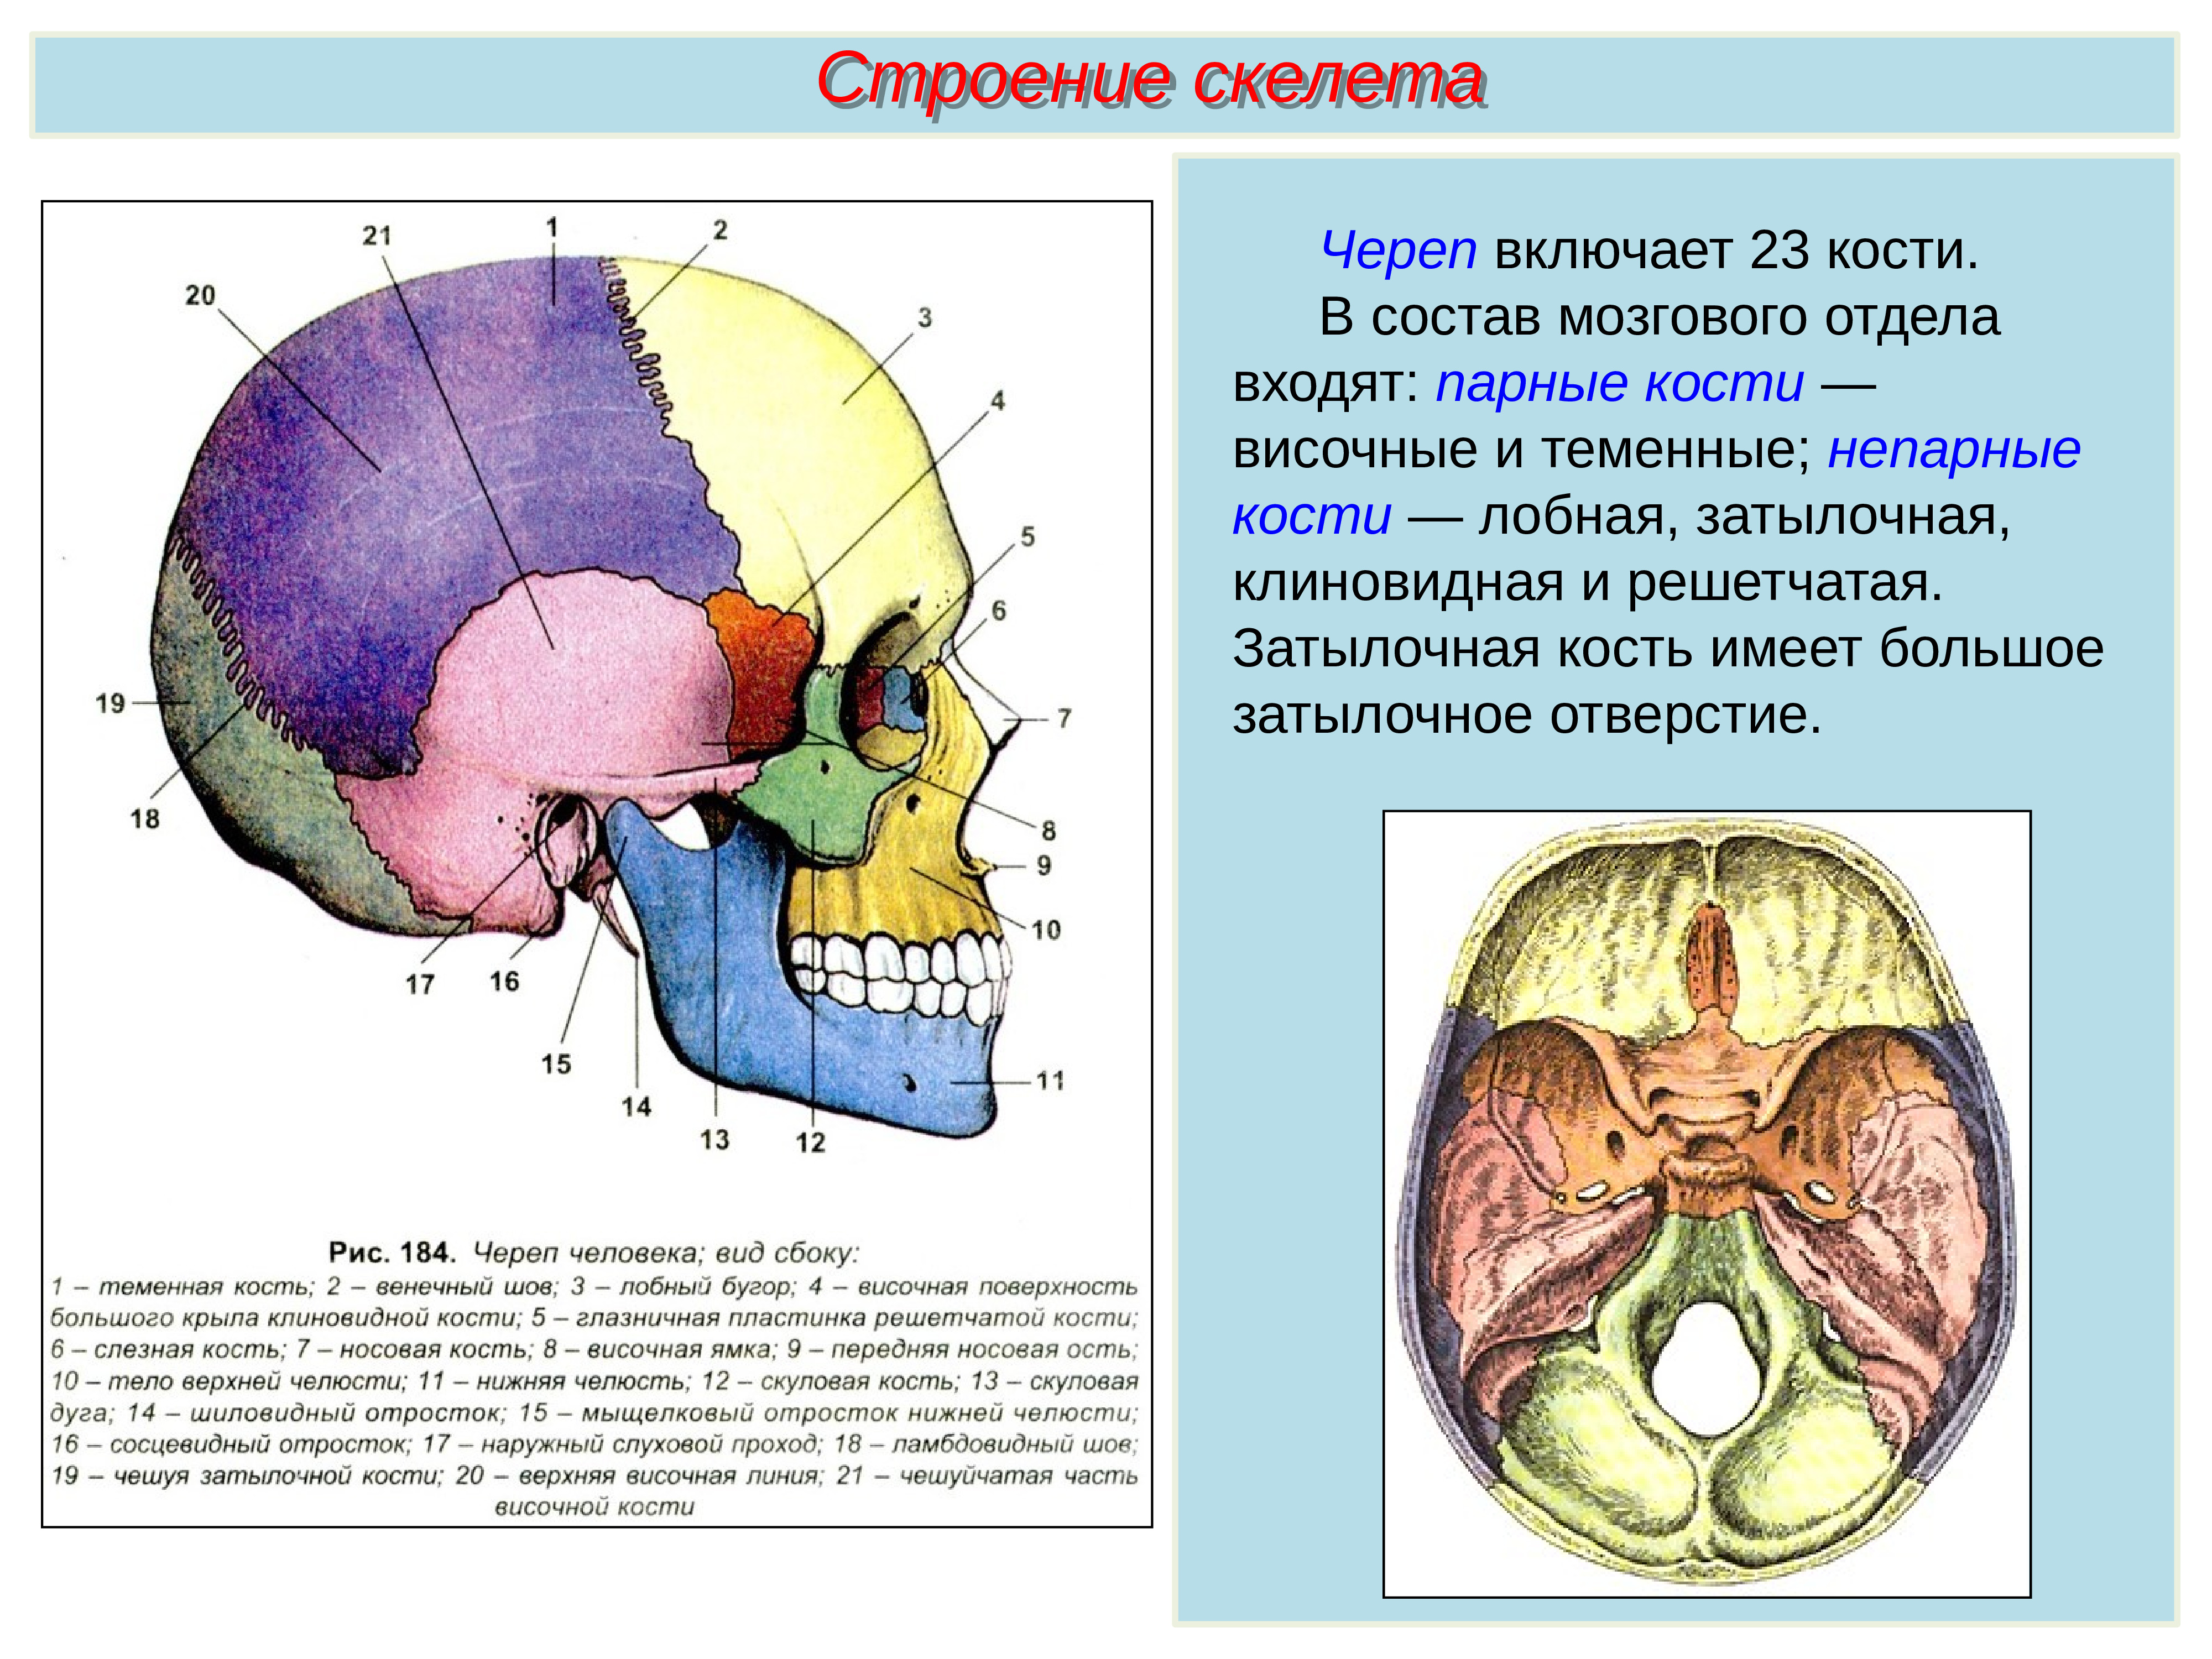 В правом черепе. Решетчатая кость мозгового черепа. Скелет головы человека решетчатая кость. Скелет головы мозговой отдел кости. Соединение костей мозгового отдела.